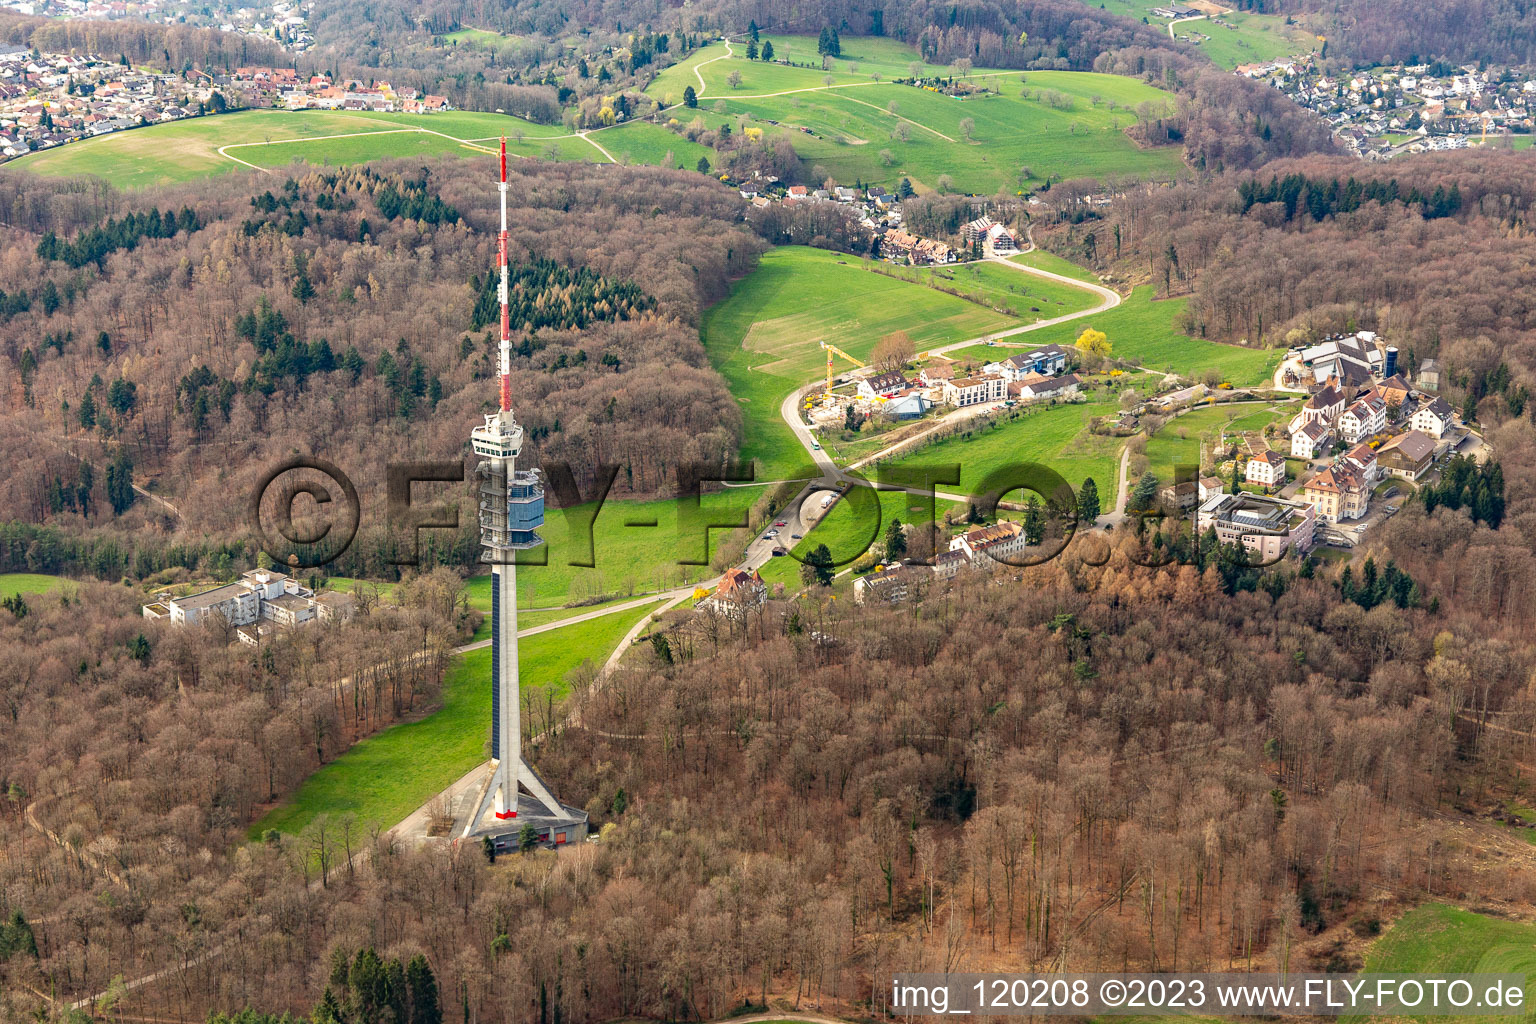 Fernsehturm St. Chrischona in Bettingen im Kanton Basel im Bundesland Basel-Stadt, Schweiz